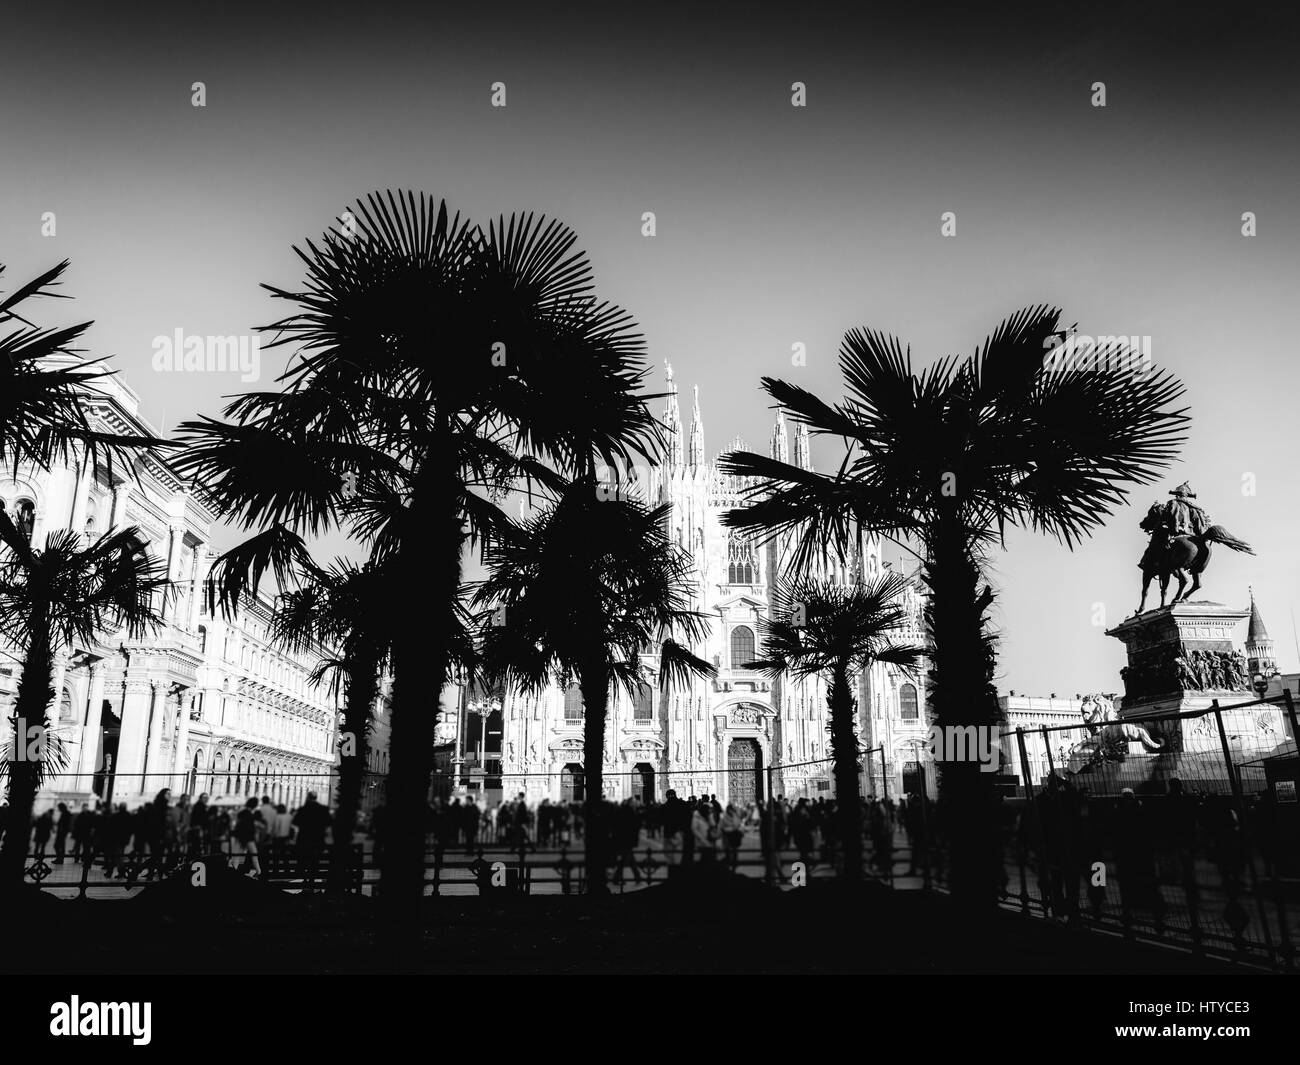 Mailand, Italien - 21. Februar 2017: das Aussehen von einer Oase mit Palmen gegenüber Mailänder Gotik-Ära Dom hat eine lebhafte öffentliche hervorgebracht Stockfoto